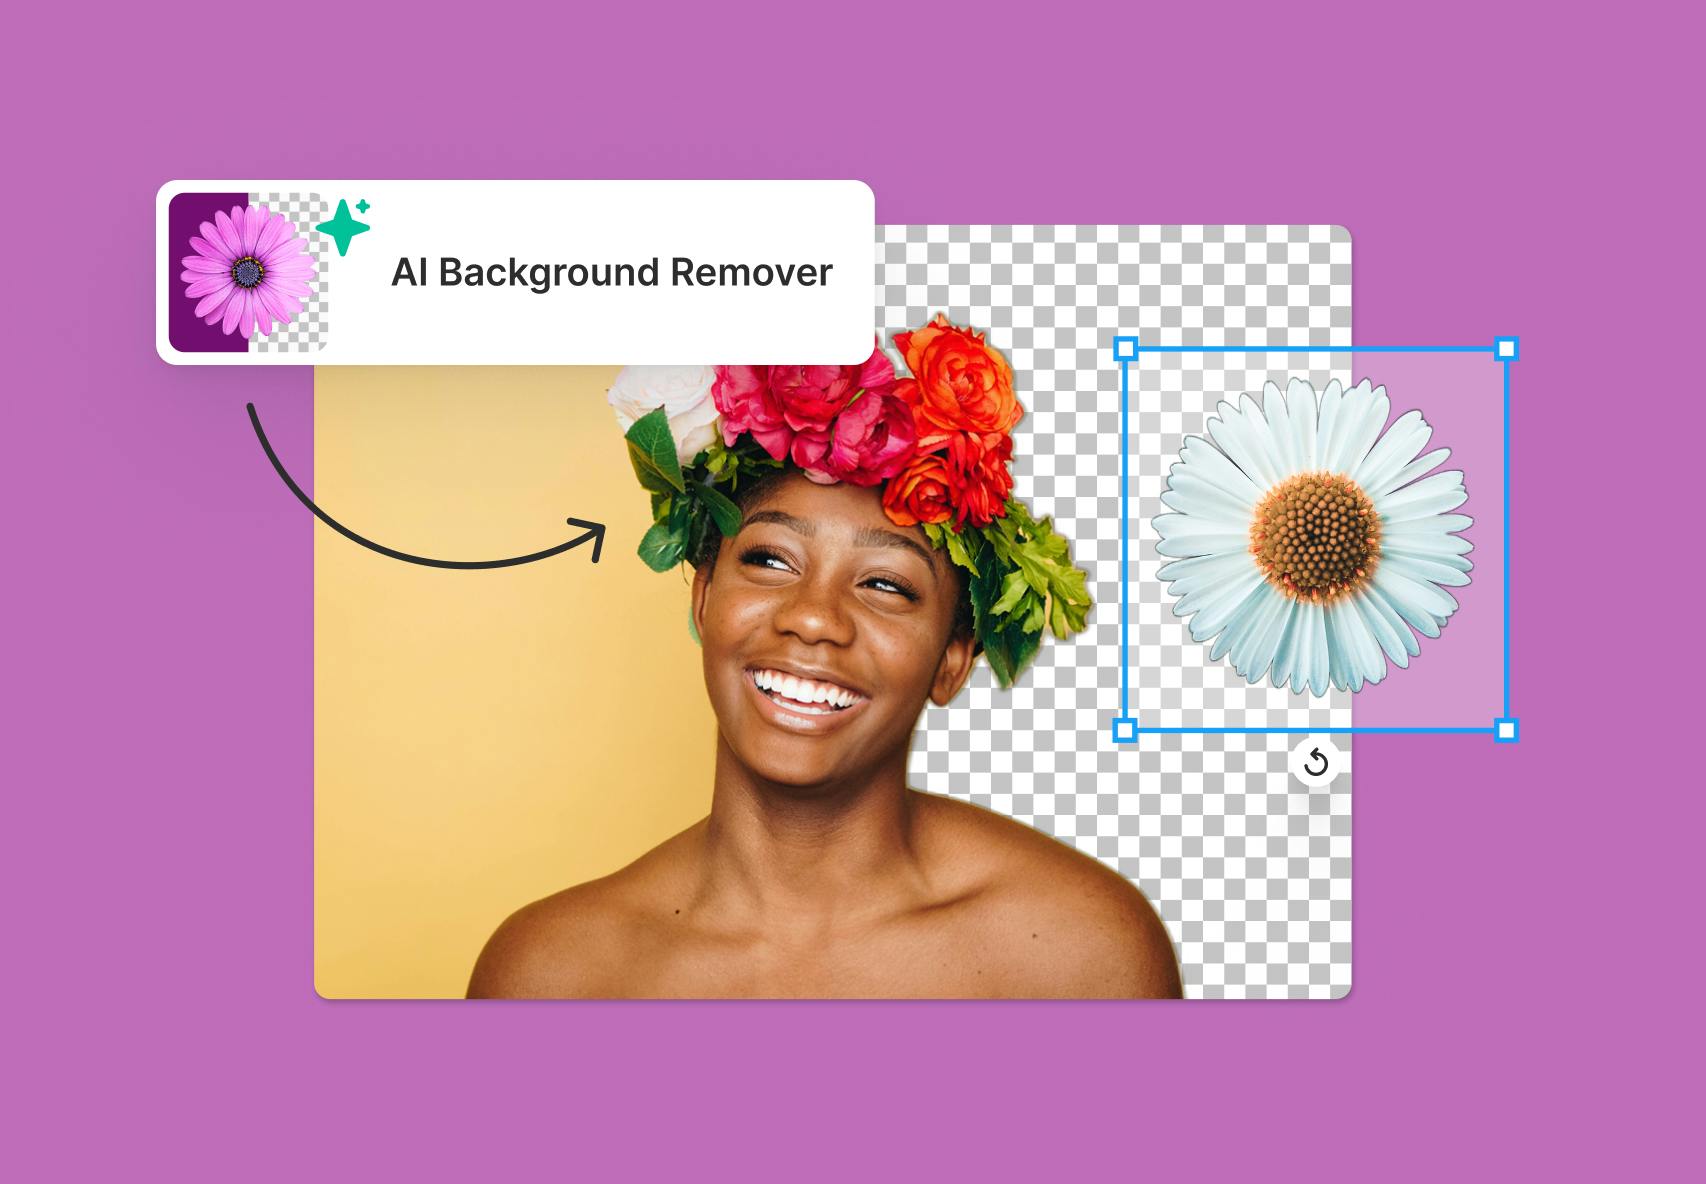 Xóa bỏ phông nền chỉ trong vài giây với Remove Backgrounds with AI. Công cụ này sẽ thay đổi việc chỉnh sửa ảnh của bạn hoàn toàn và cải thiện đáng kể khả năng sáng tạo của bạn. Hãy truy cập để xem cách hoạt động của nó.